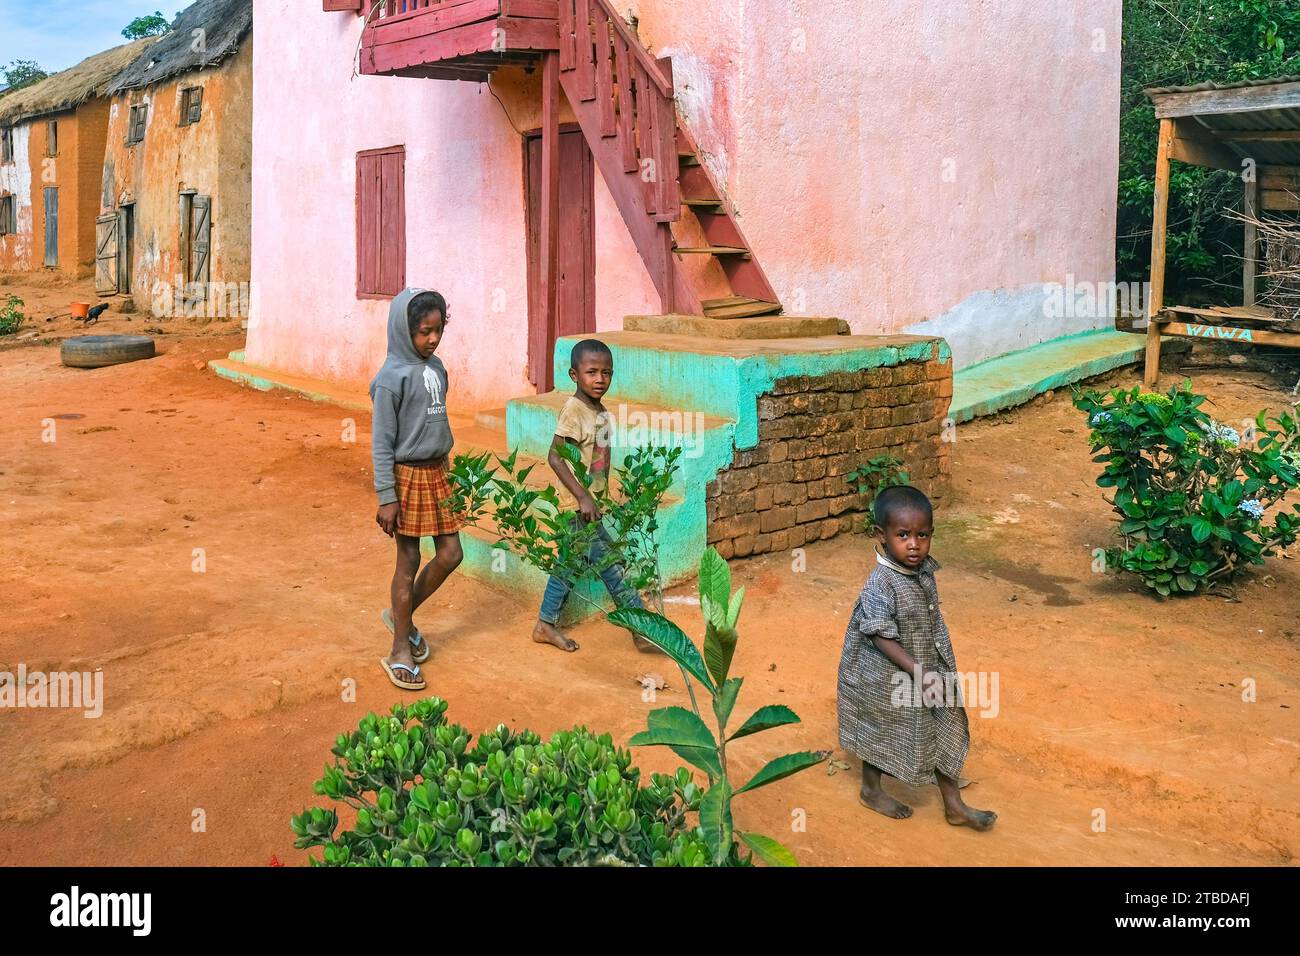 Enfants malgaches dans la rue d'un village rural avec des maisons traditionnelles dans le district d'Ambositra, région d'Amoron'i Mania, Madagascar central, Afrique Banque D'Images